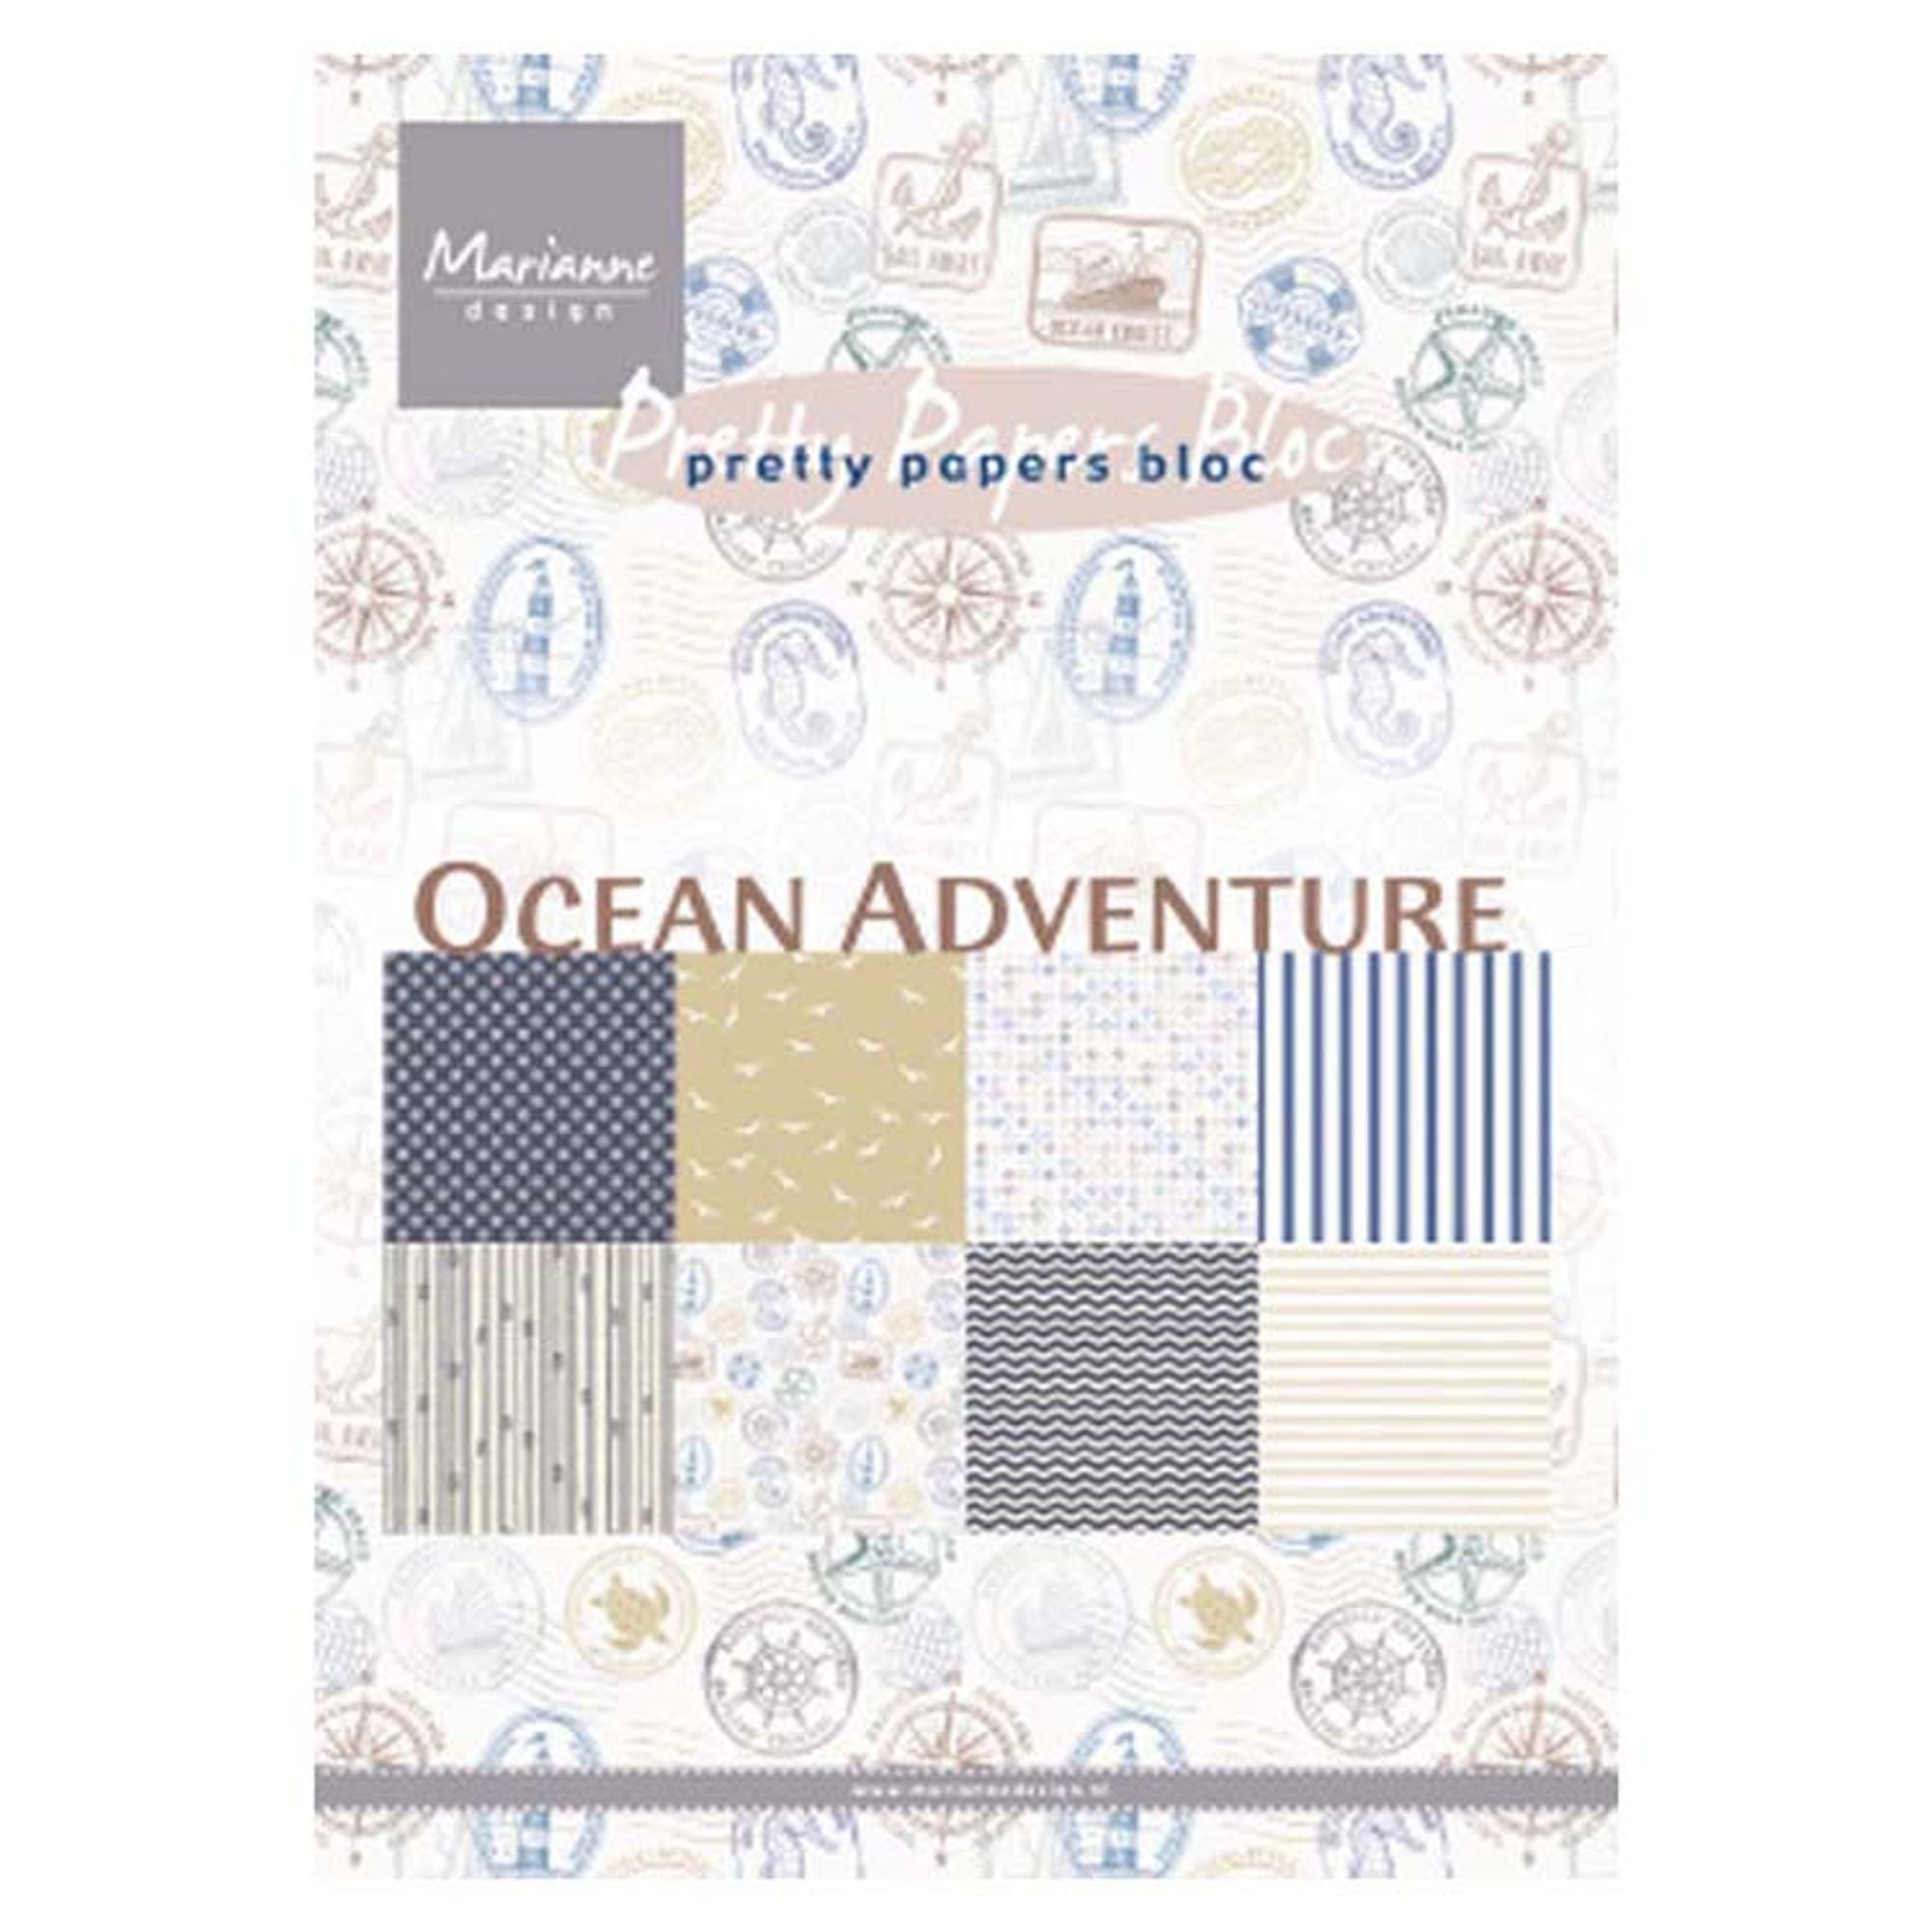 Marianne Design A5 Pretty Paper Bloc Ocean Adventure